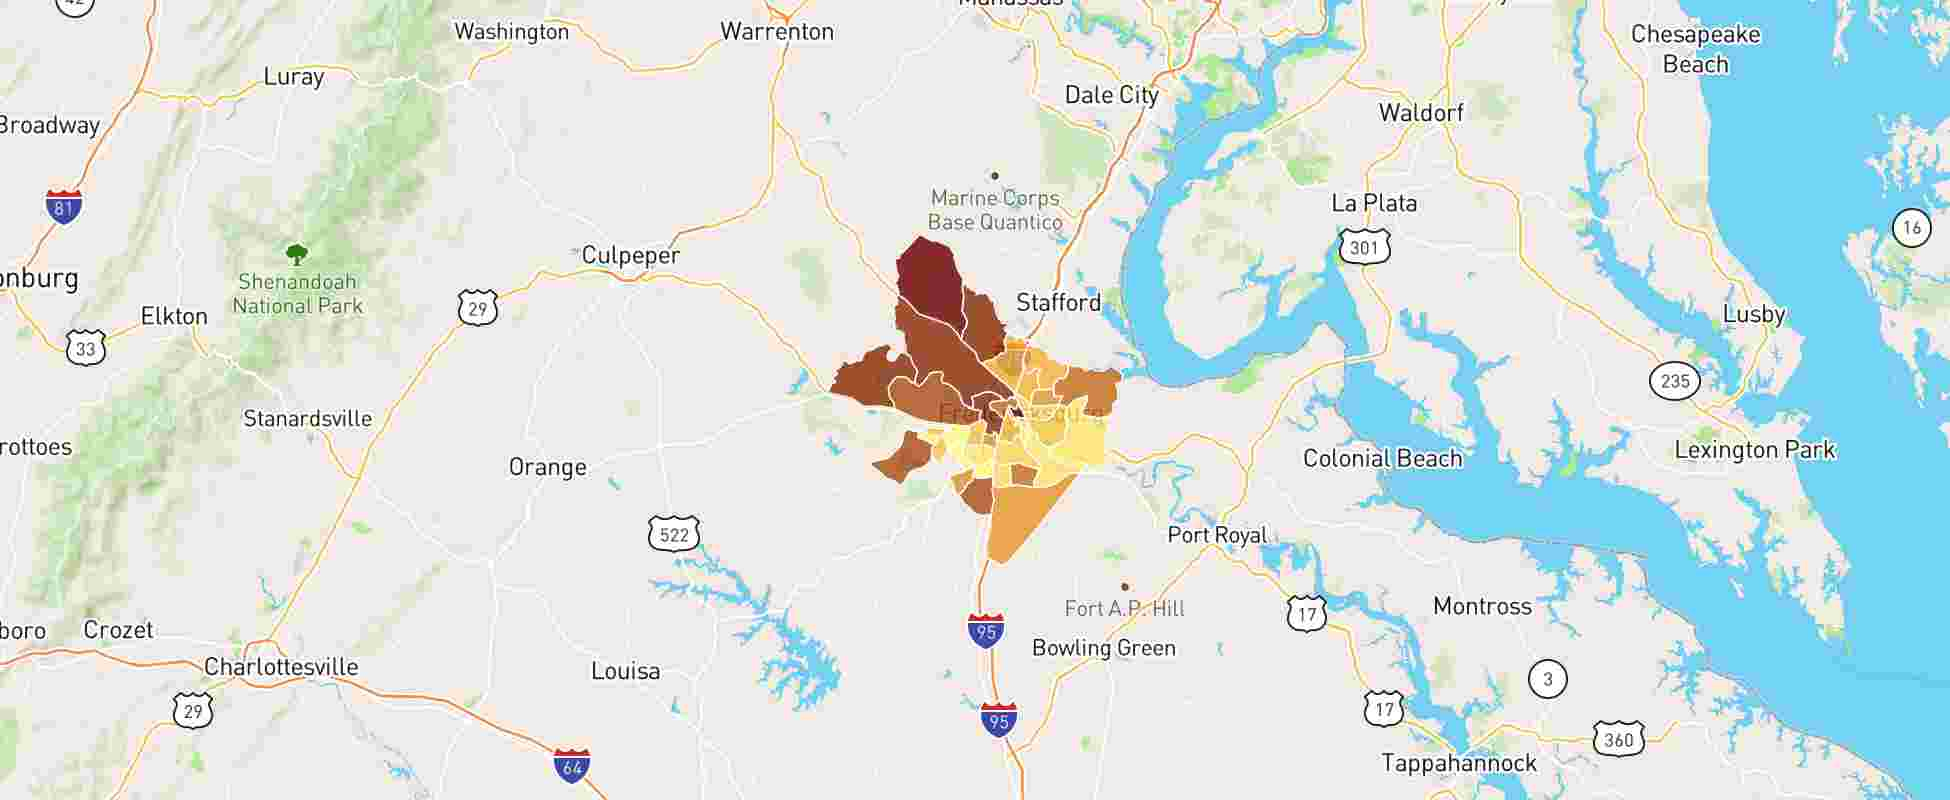 Fredericksburg VA Real Estate Market Data NeighborhoodScout